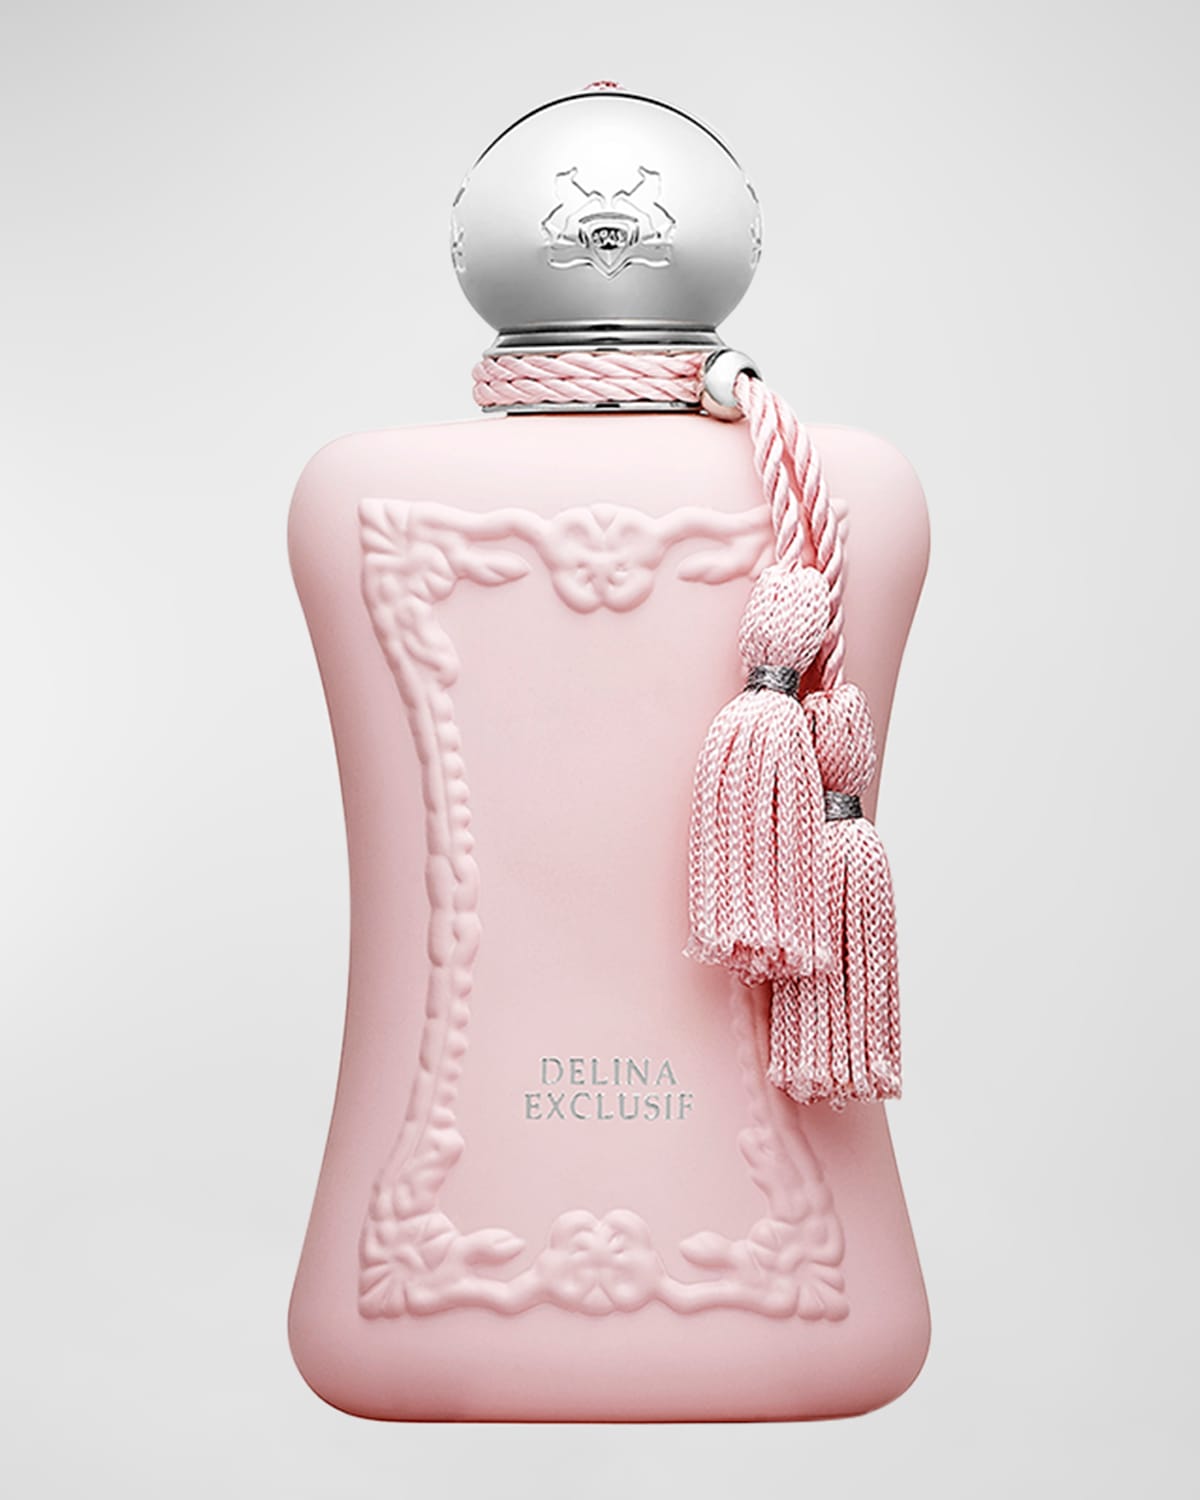 Delina Exclusif Eau de Parfum, 2.5 oz.